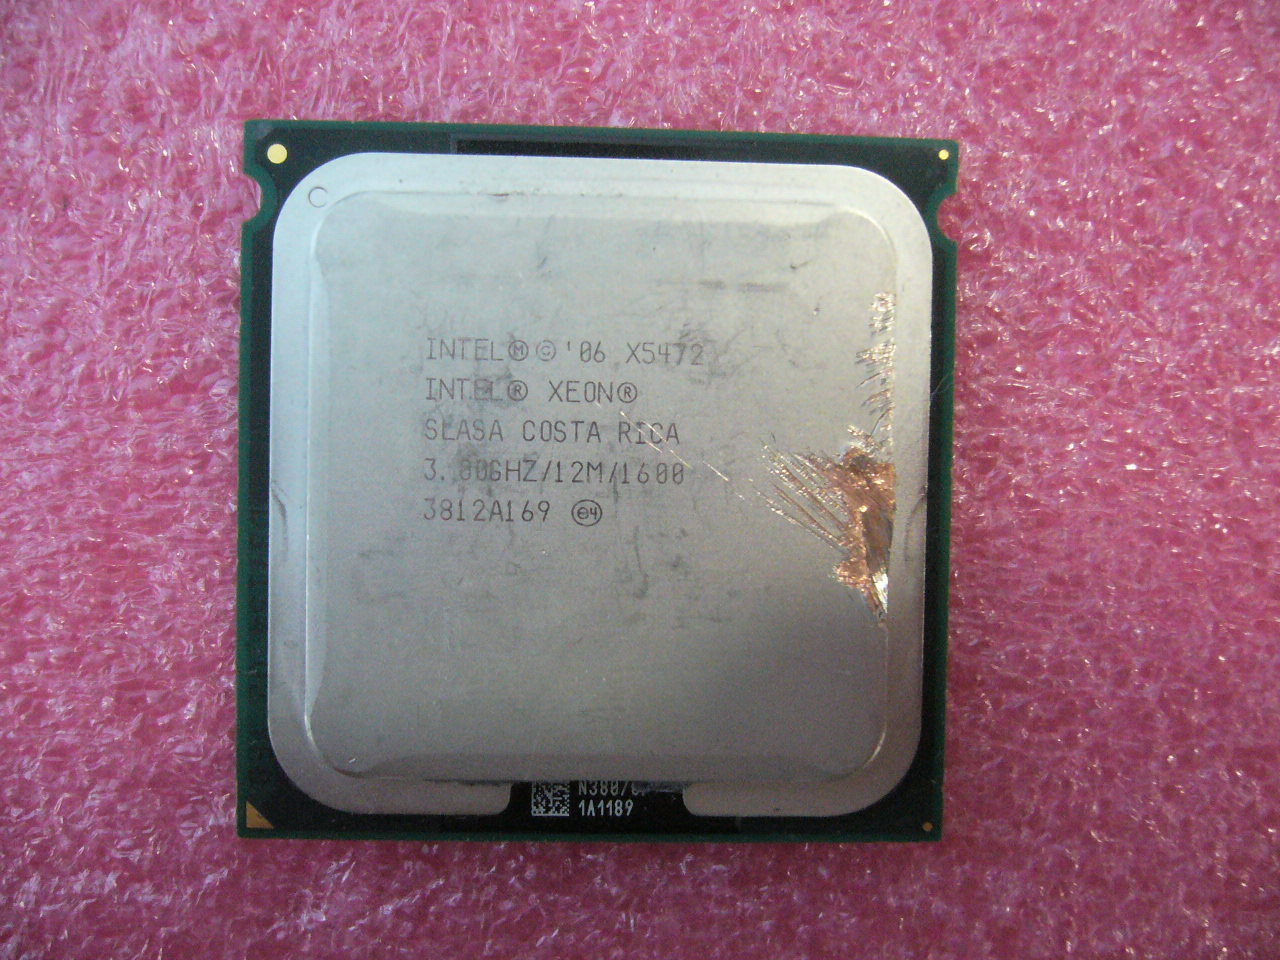 QTY 1x Intel Xeon CPU Quad Core X5472 3.0Ghz/12MB/1600Mhz LGA771 SLASA